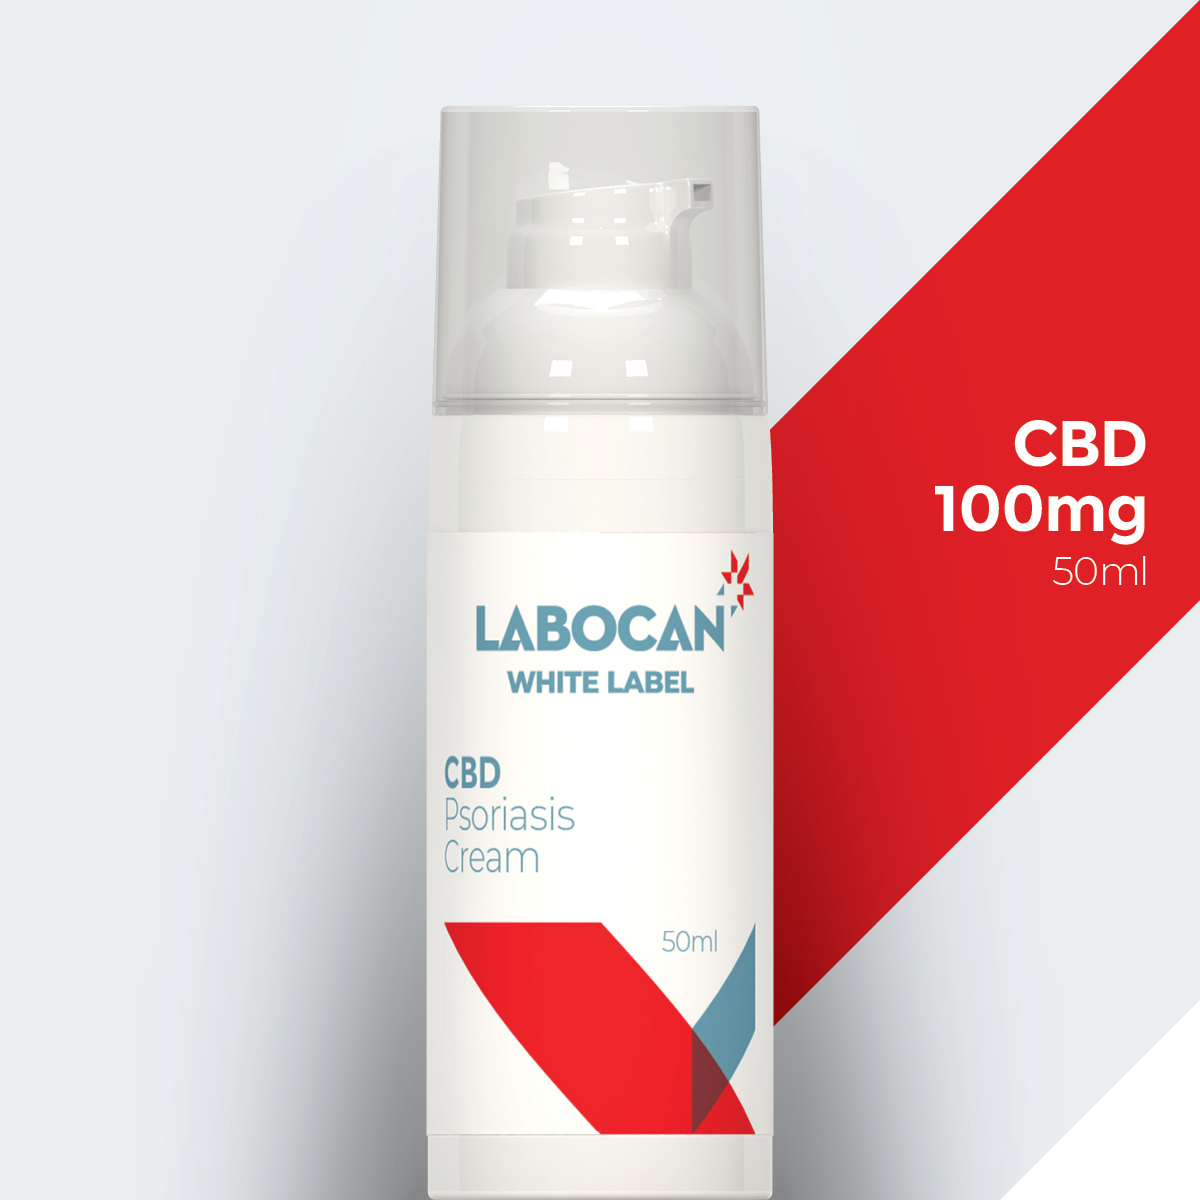 Labocan White label CBD Psoriasis cream